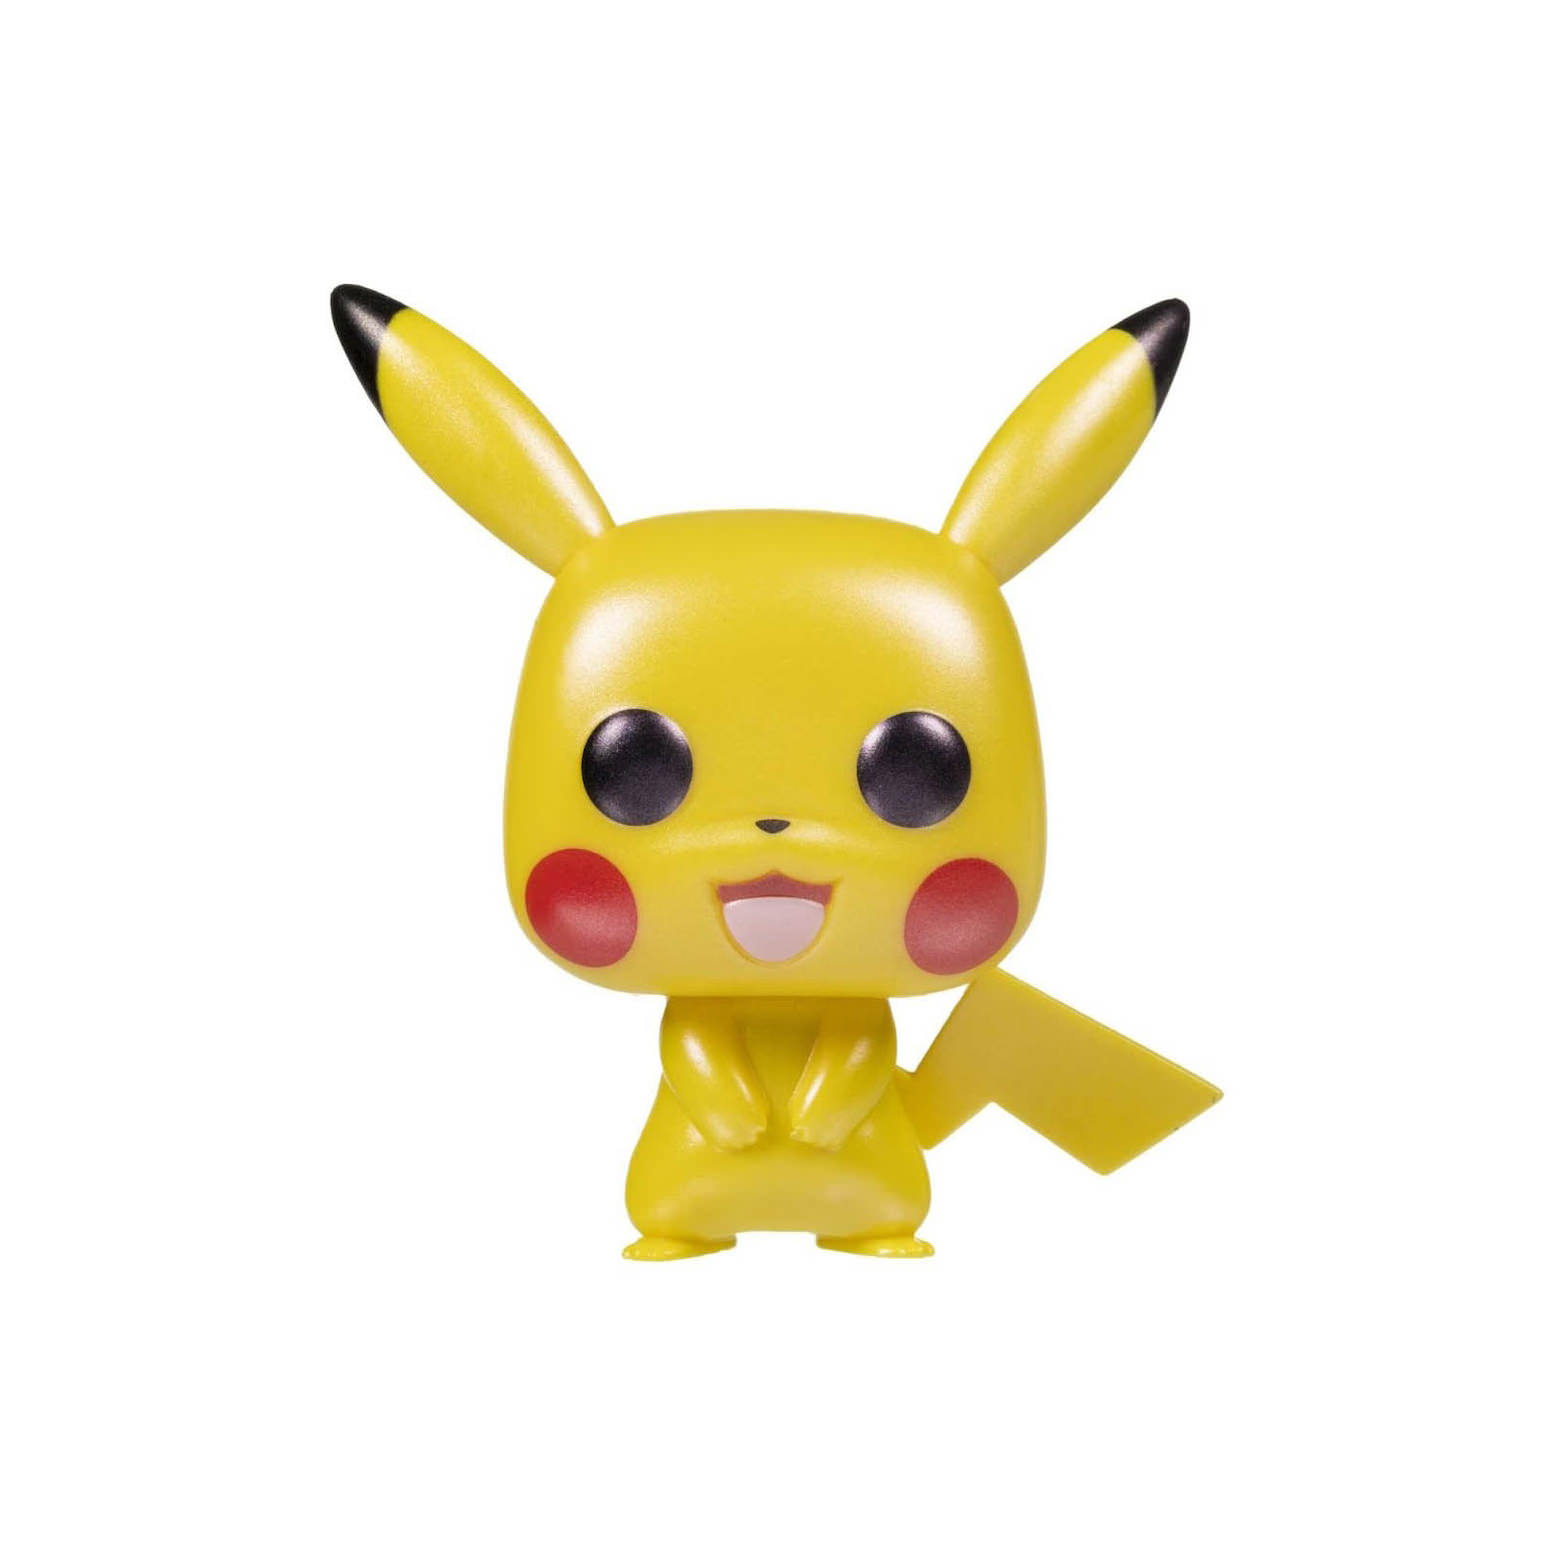 Funko pop [Pokémon] - Pikachu - #353